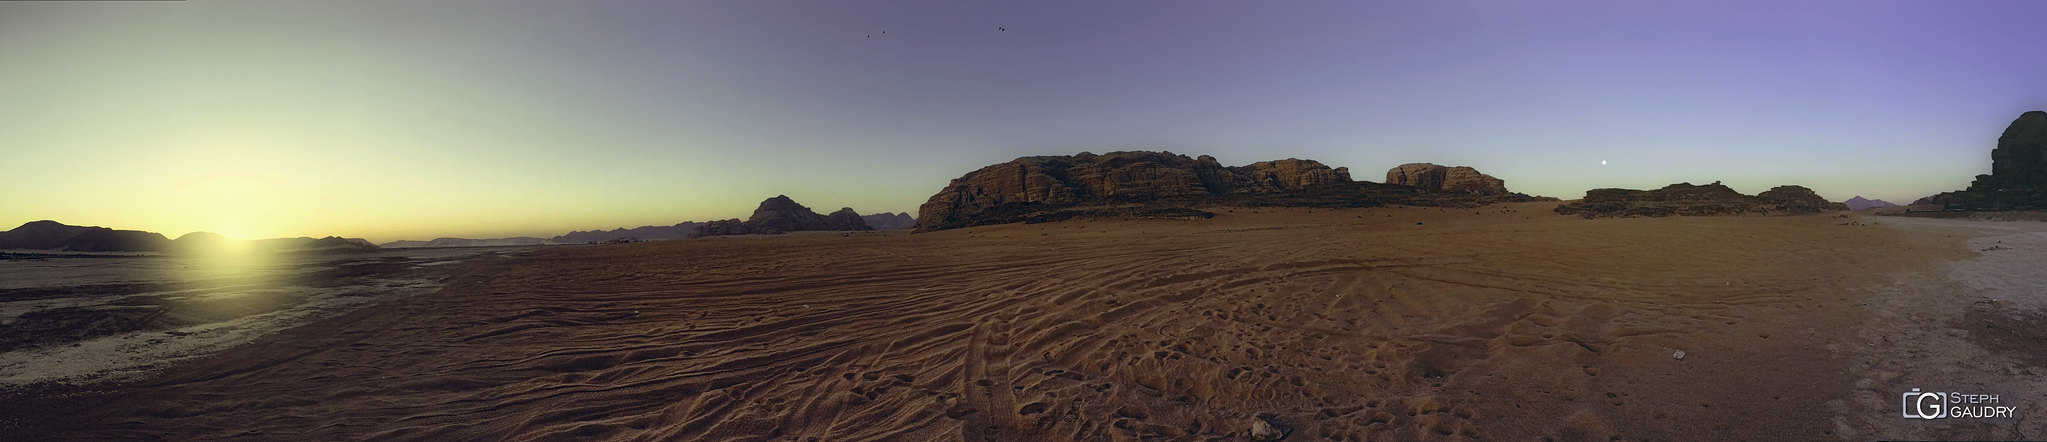 Wadi-Rum panorama gsm [Klicken Sie hier, um die Diashow zu starten]